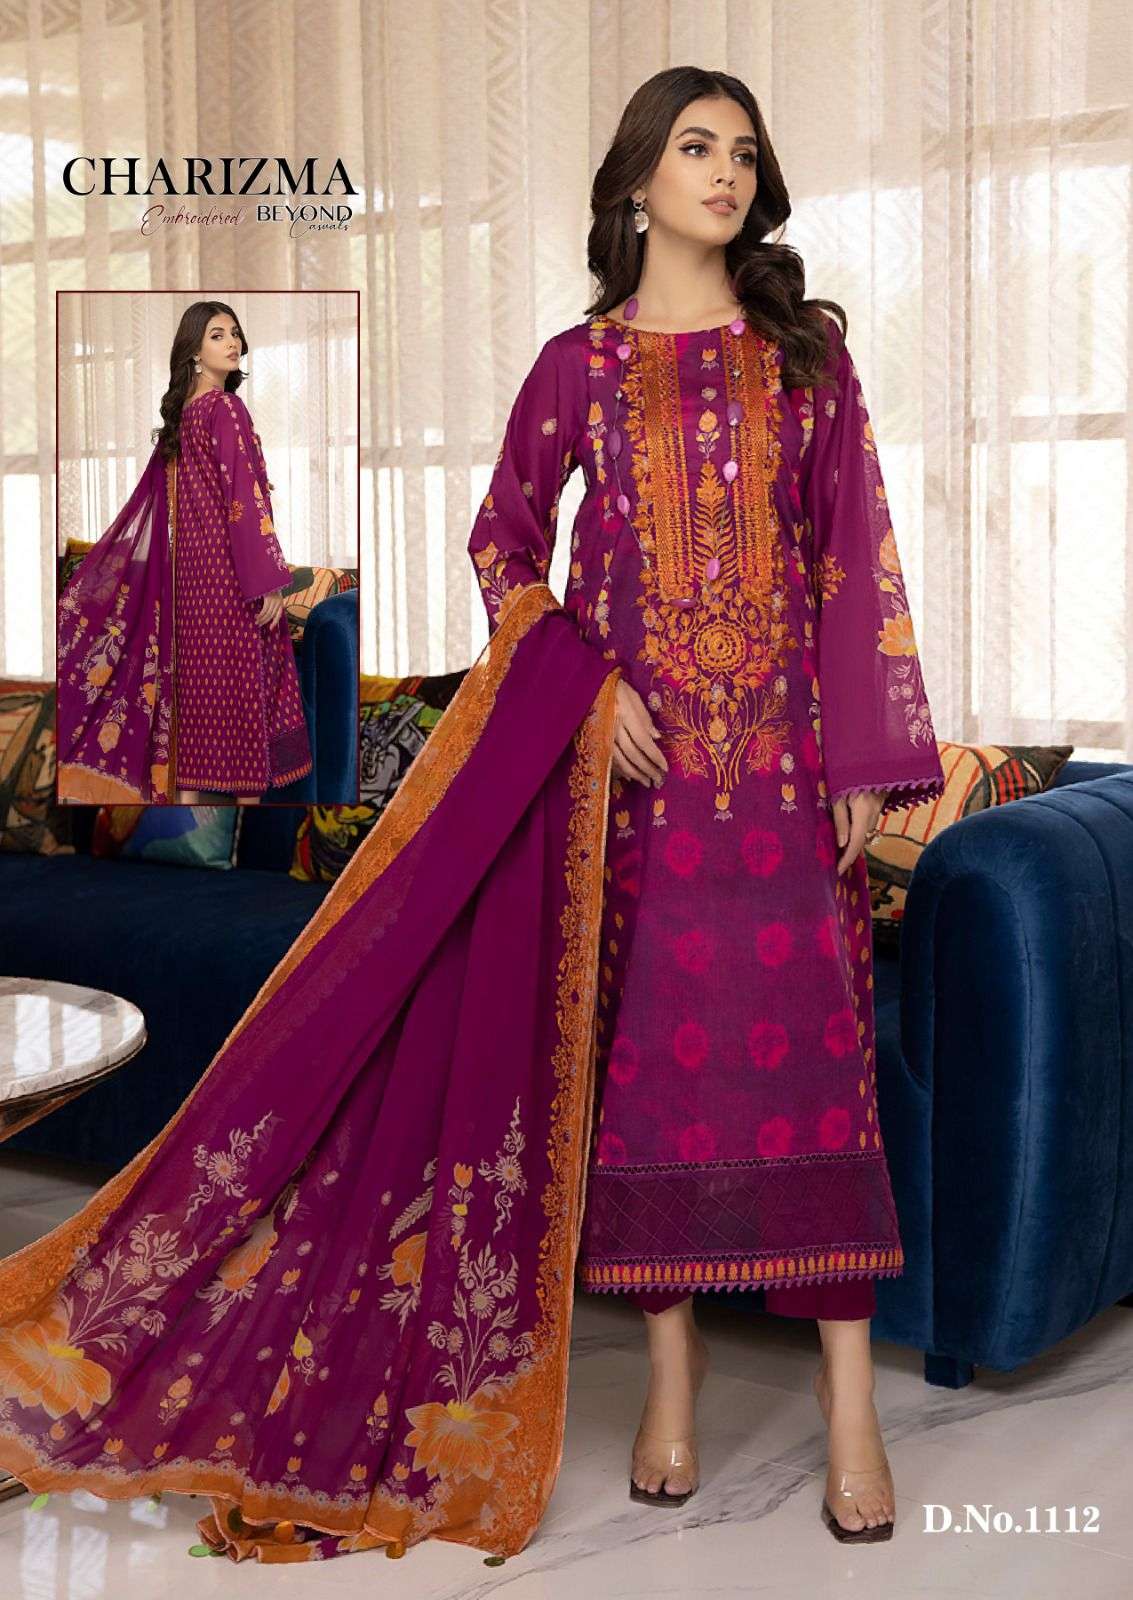 Charizma Elham Pakistani Suits catalog